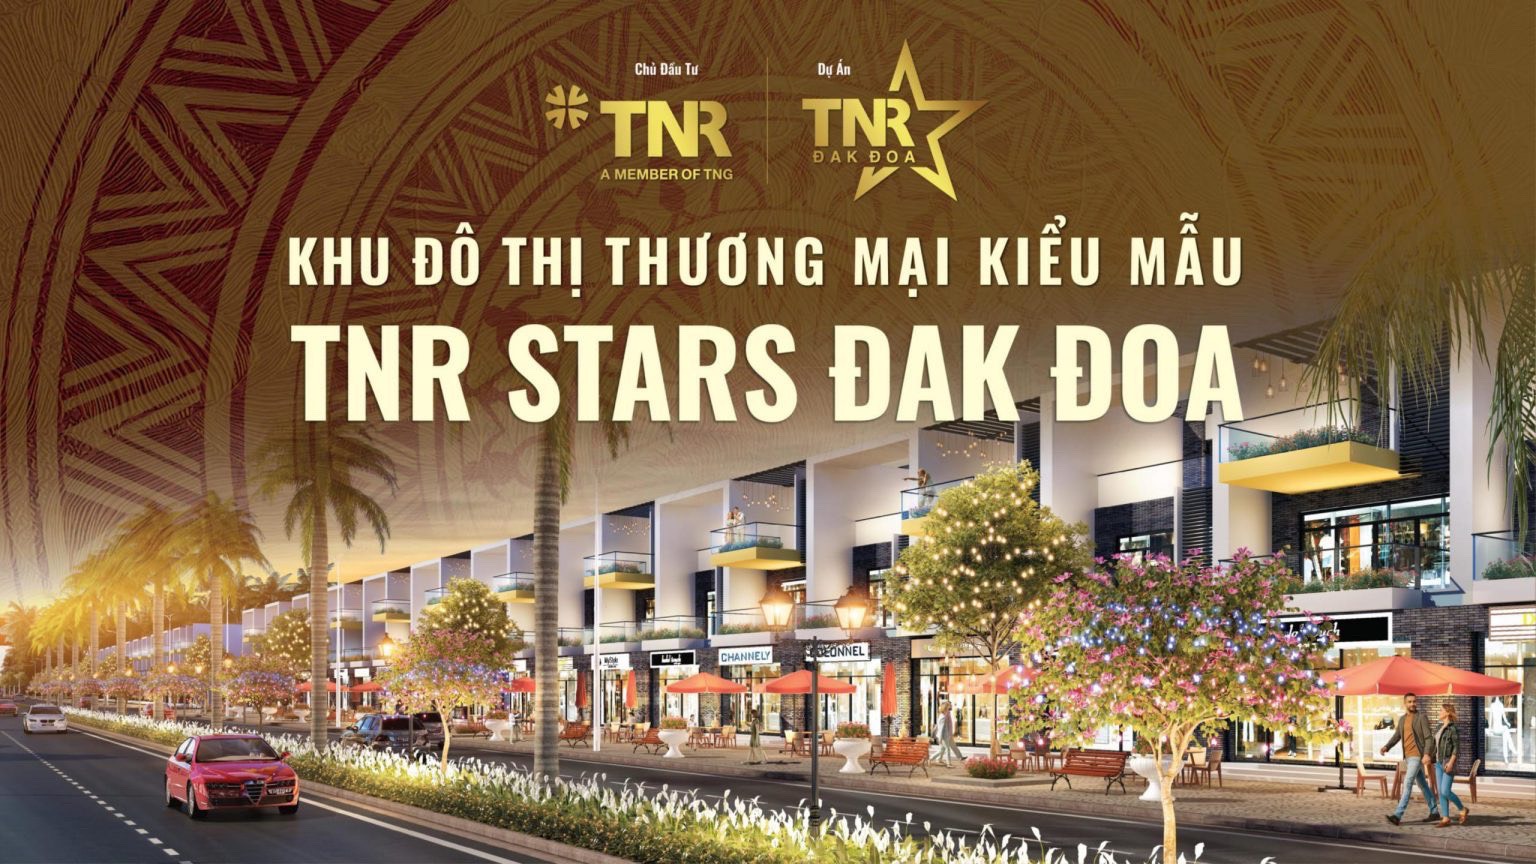 Chính thức nhận booking dự án TNR Star Đăk Đoa 2